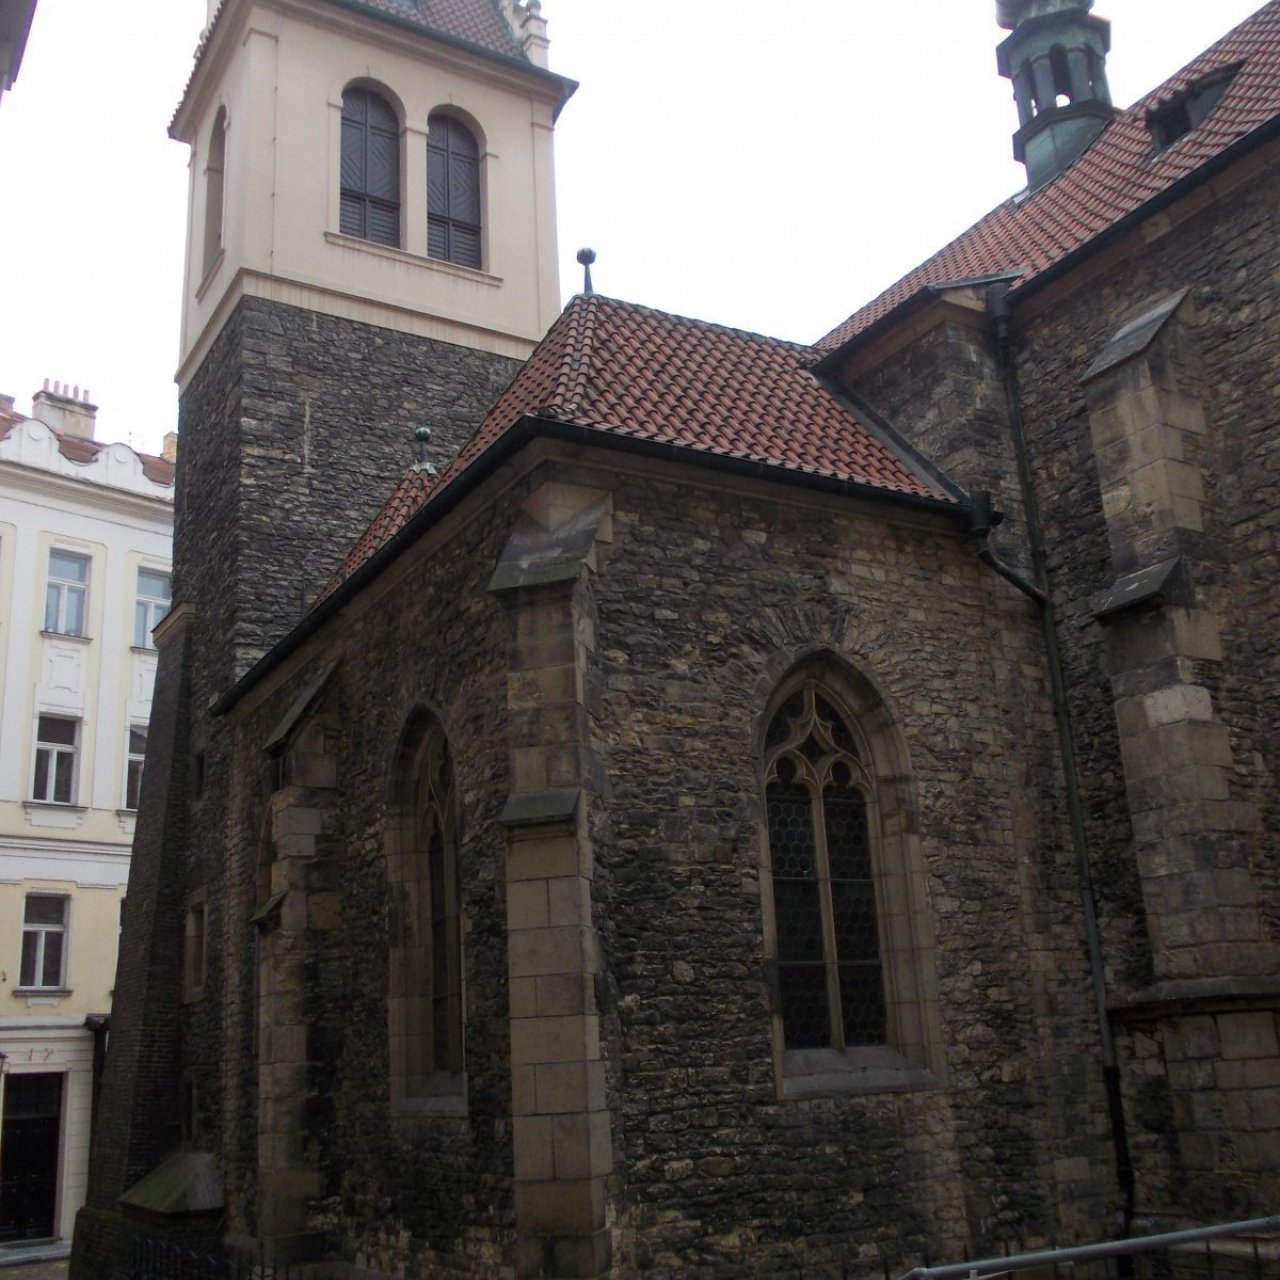 Praha - kostol sv. Martina ve zdi